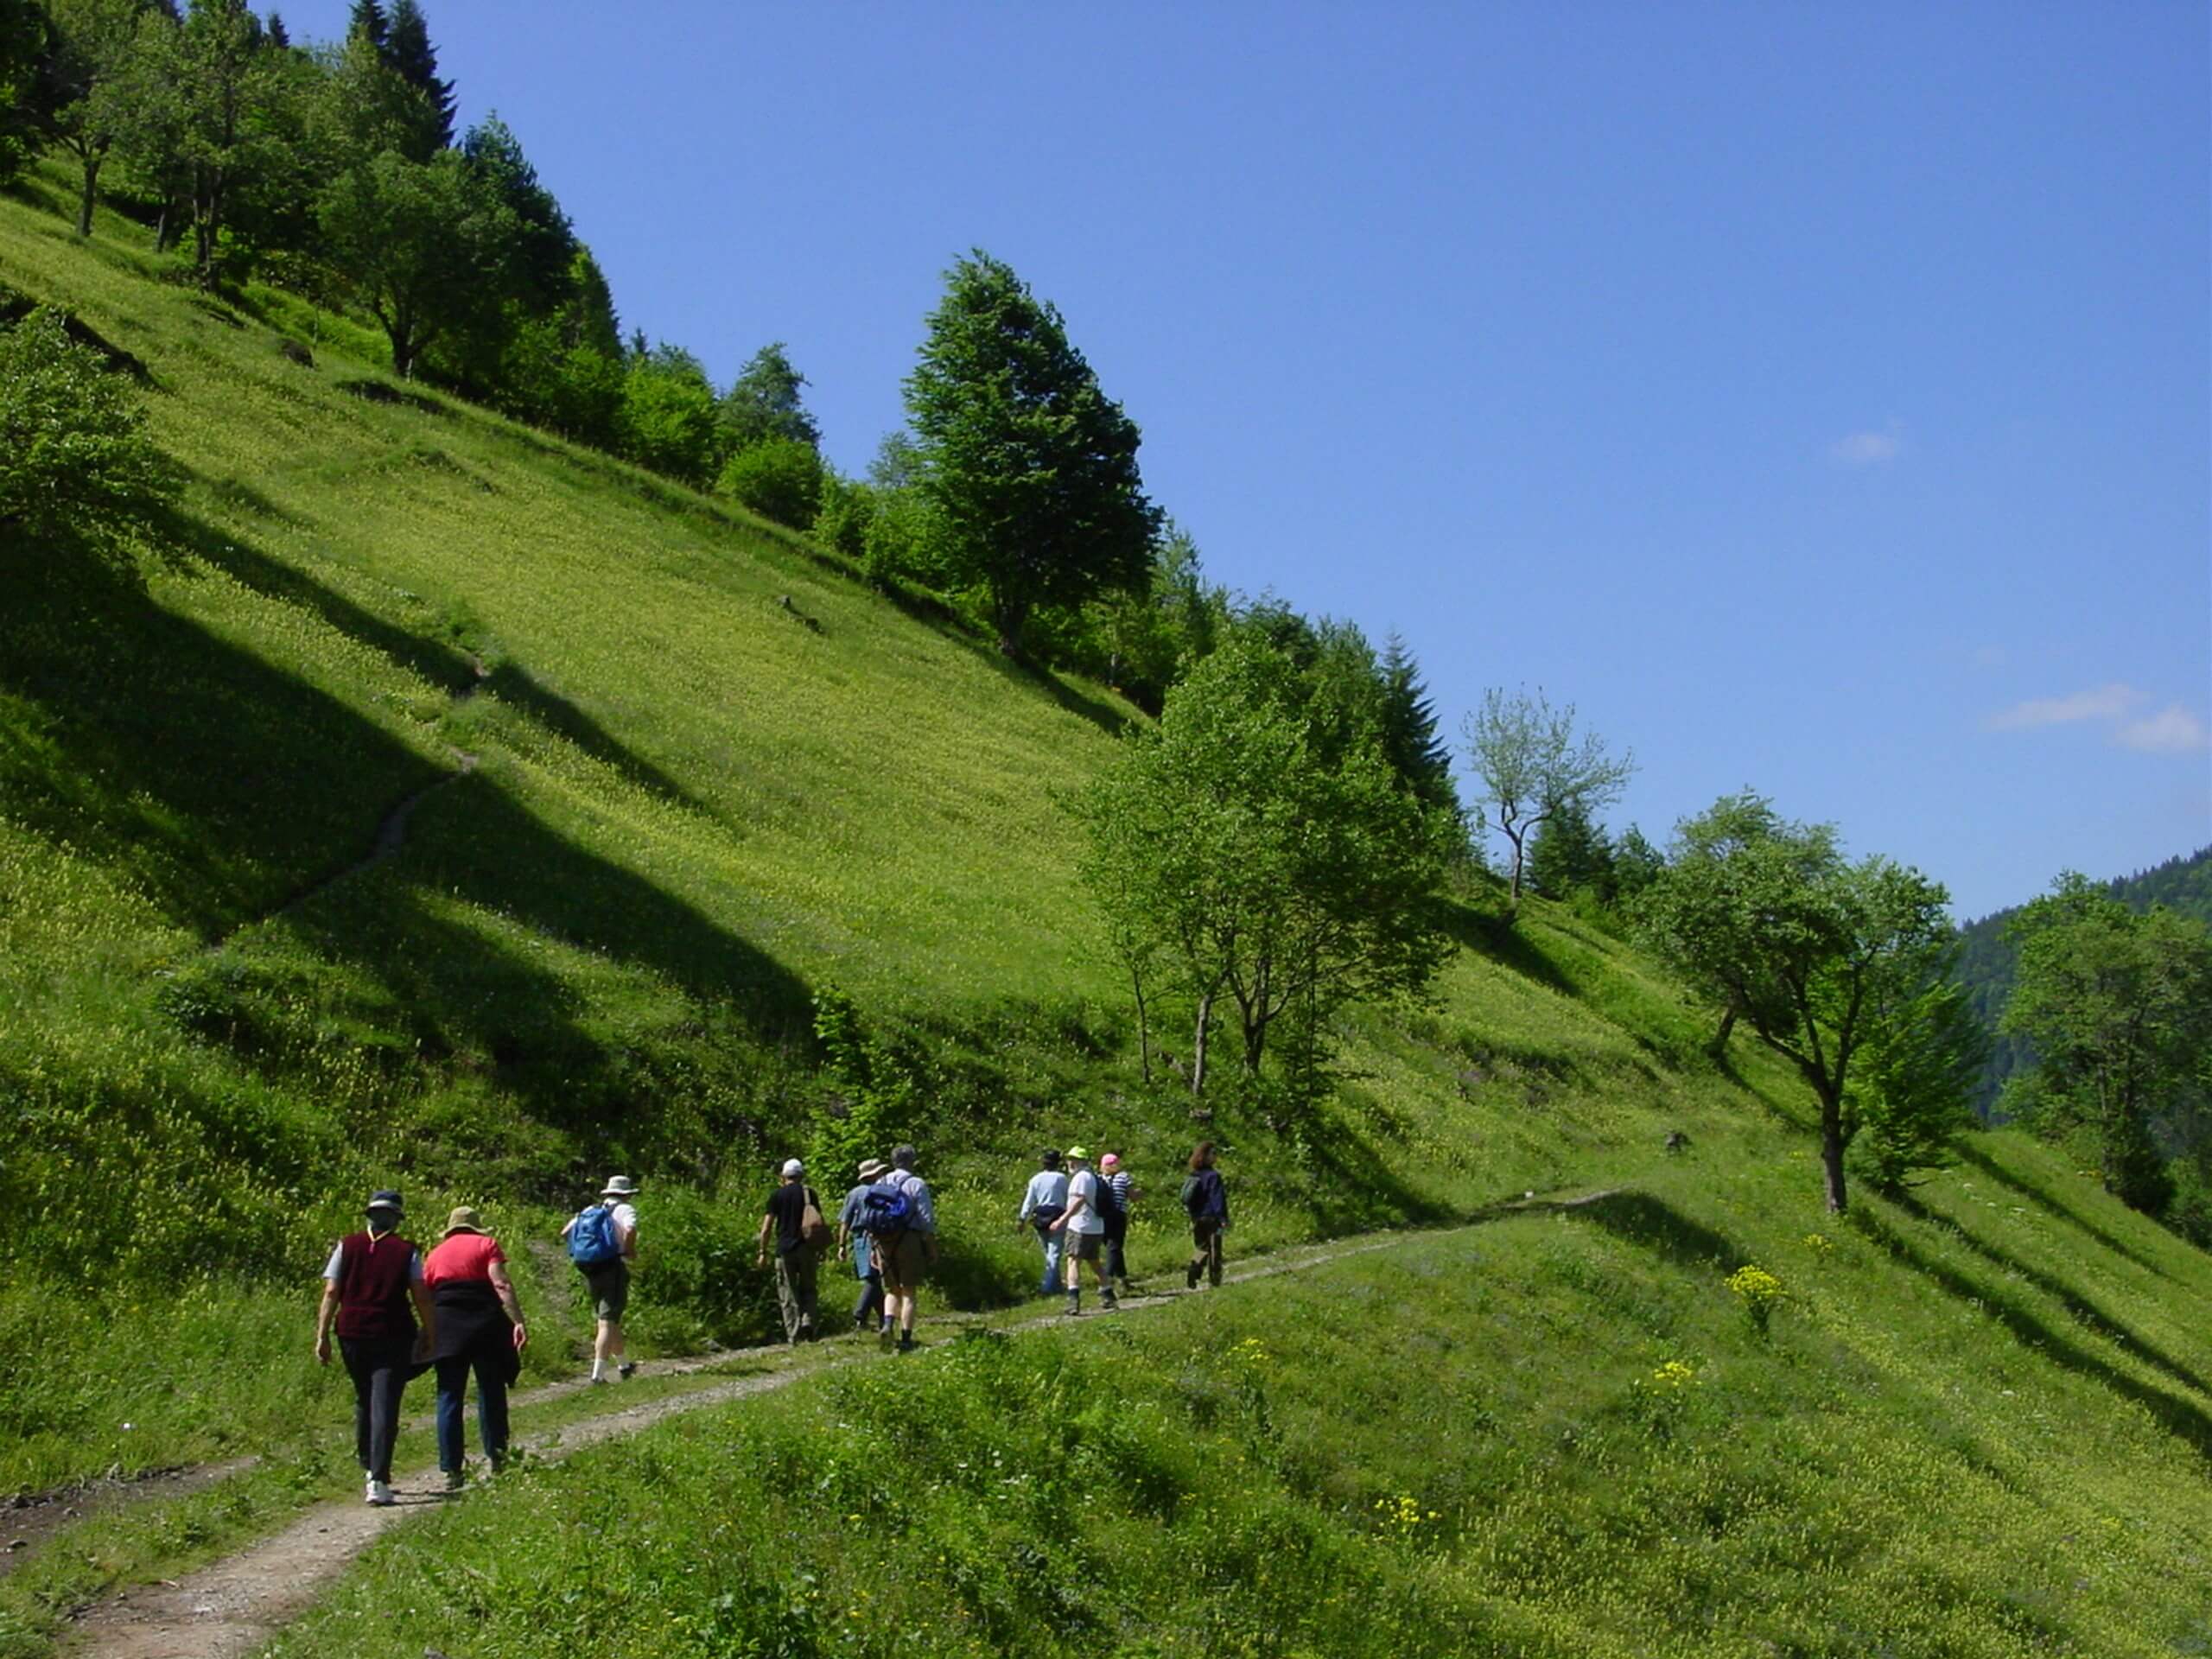 Group of trekkers walking along the green hills in Eastern Turkey